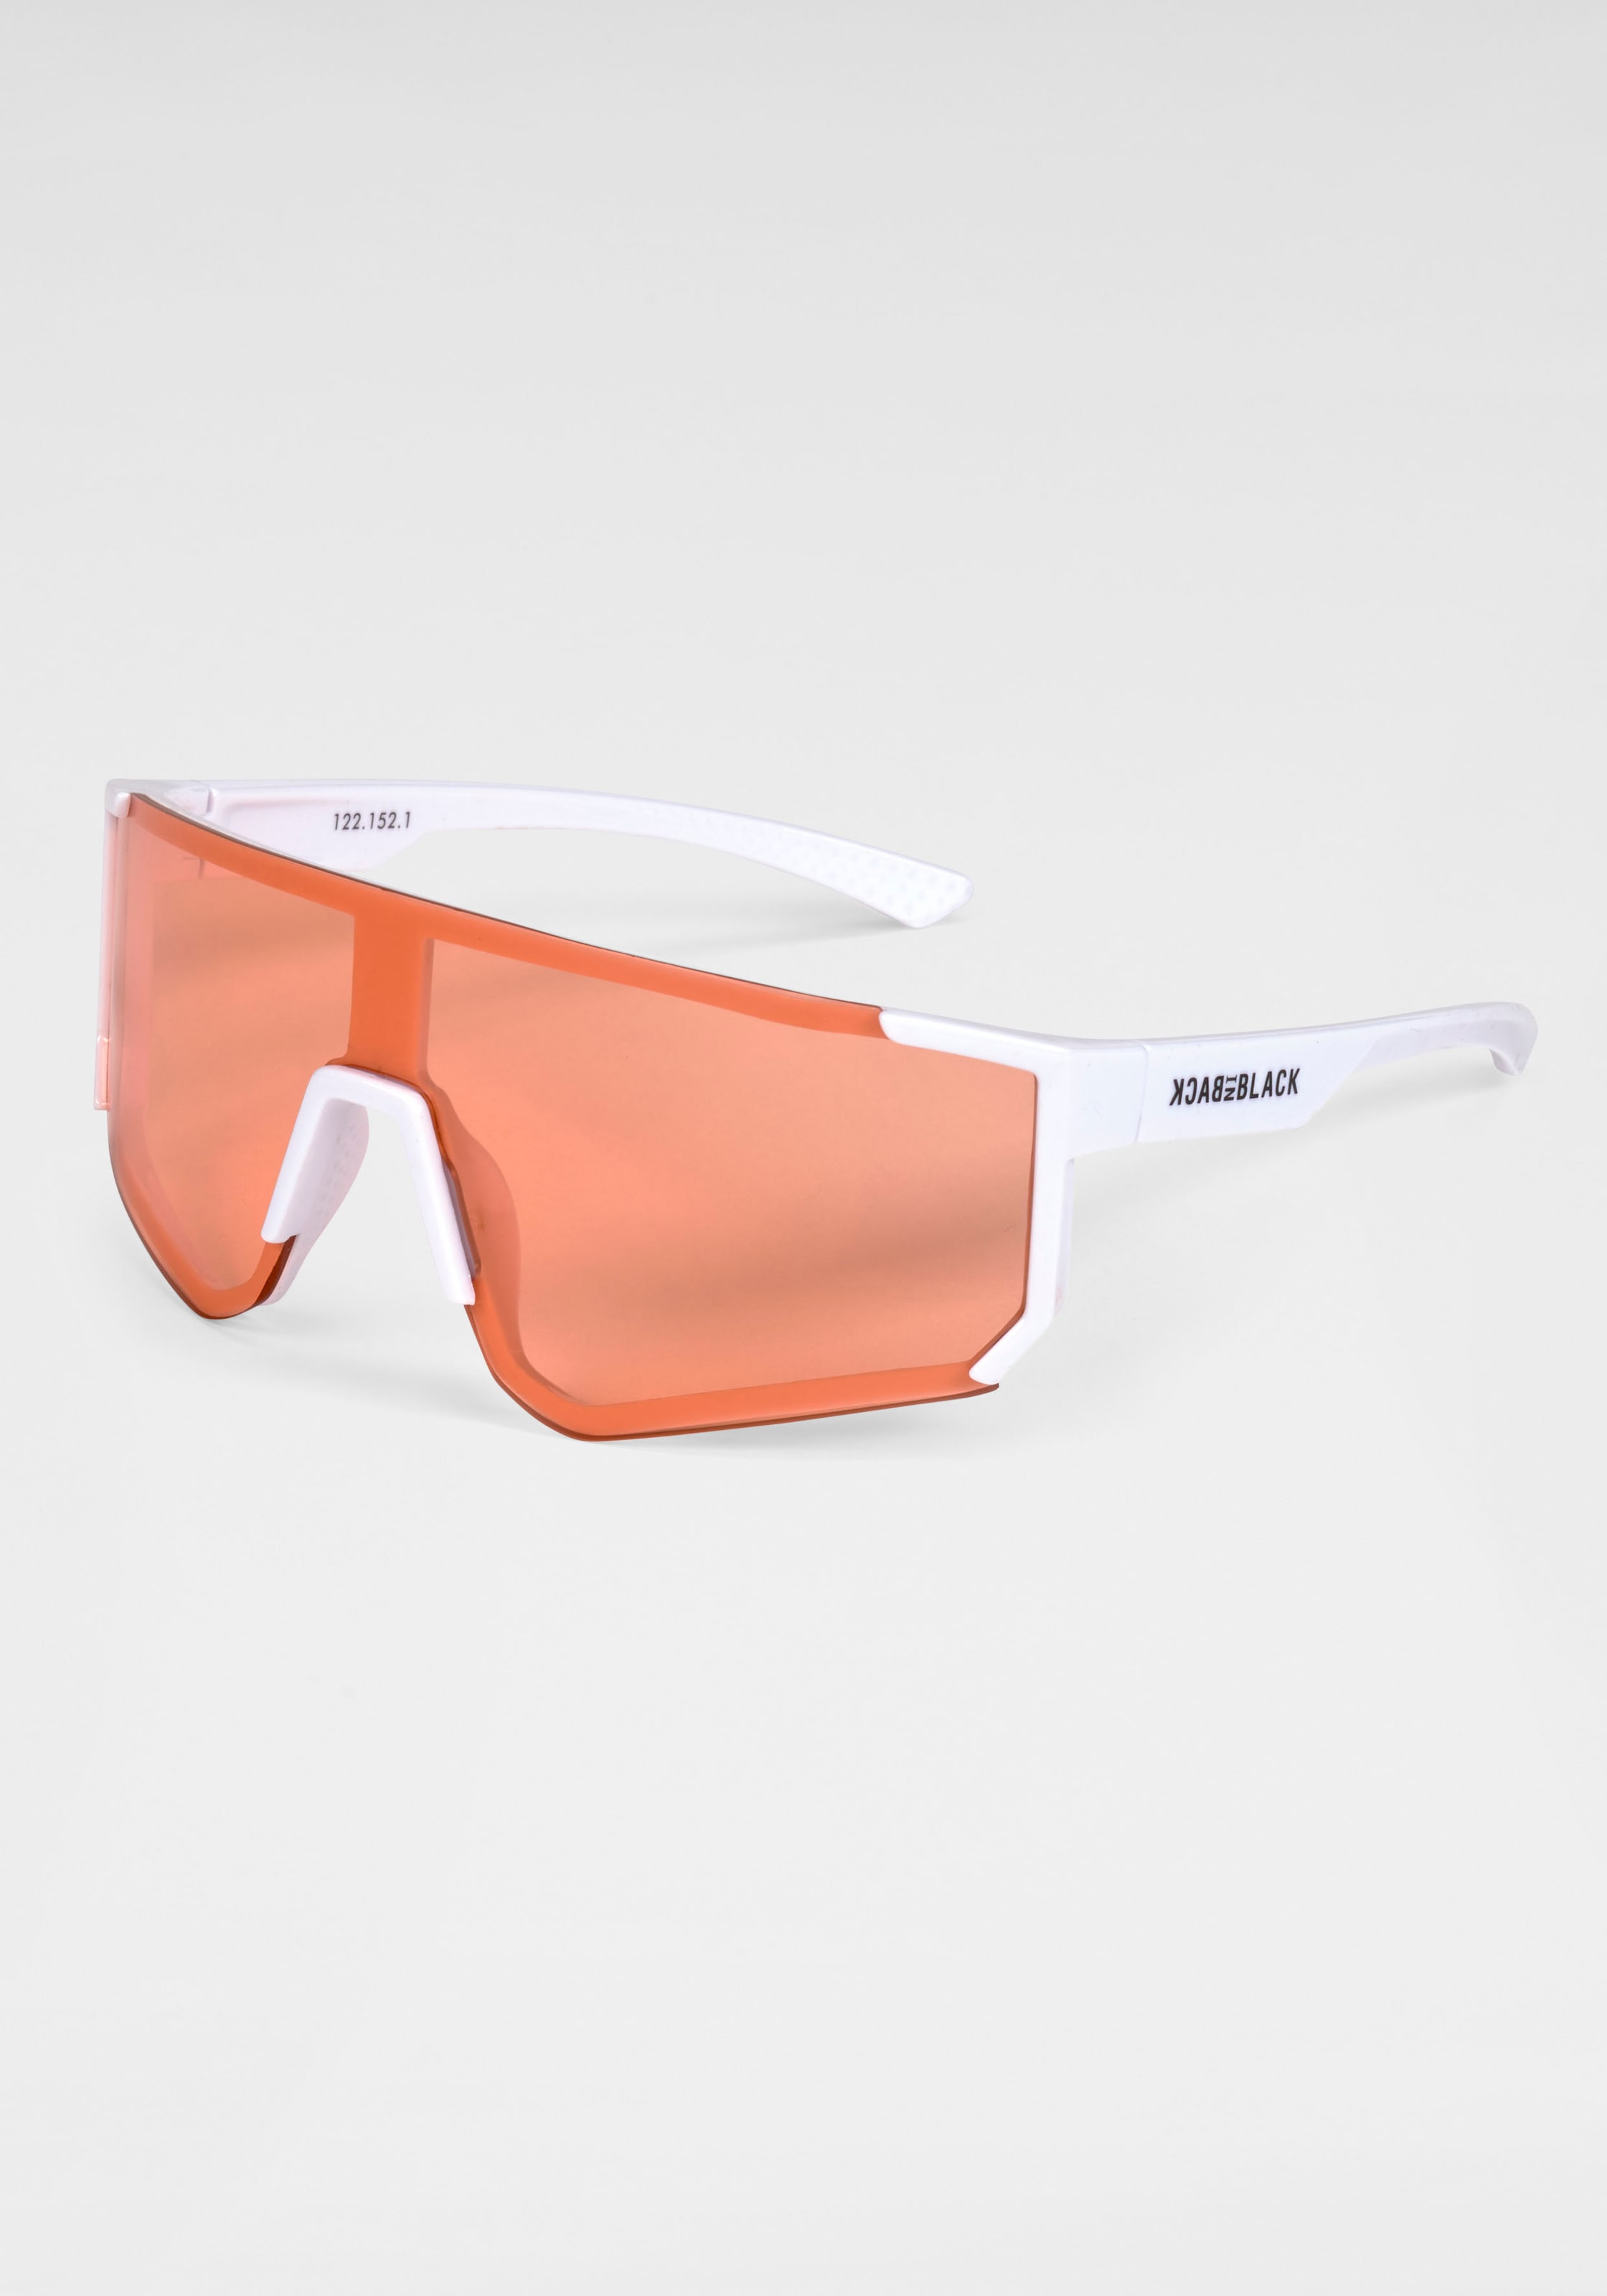 Sonnenbrille, Stylische Sportbrille mit weissem Rahmen und orangenen Gläsern